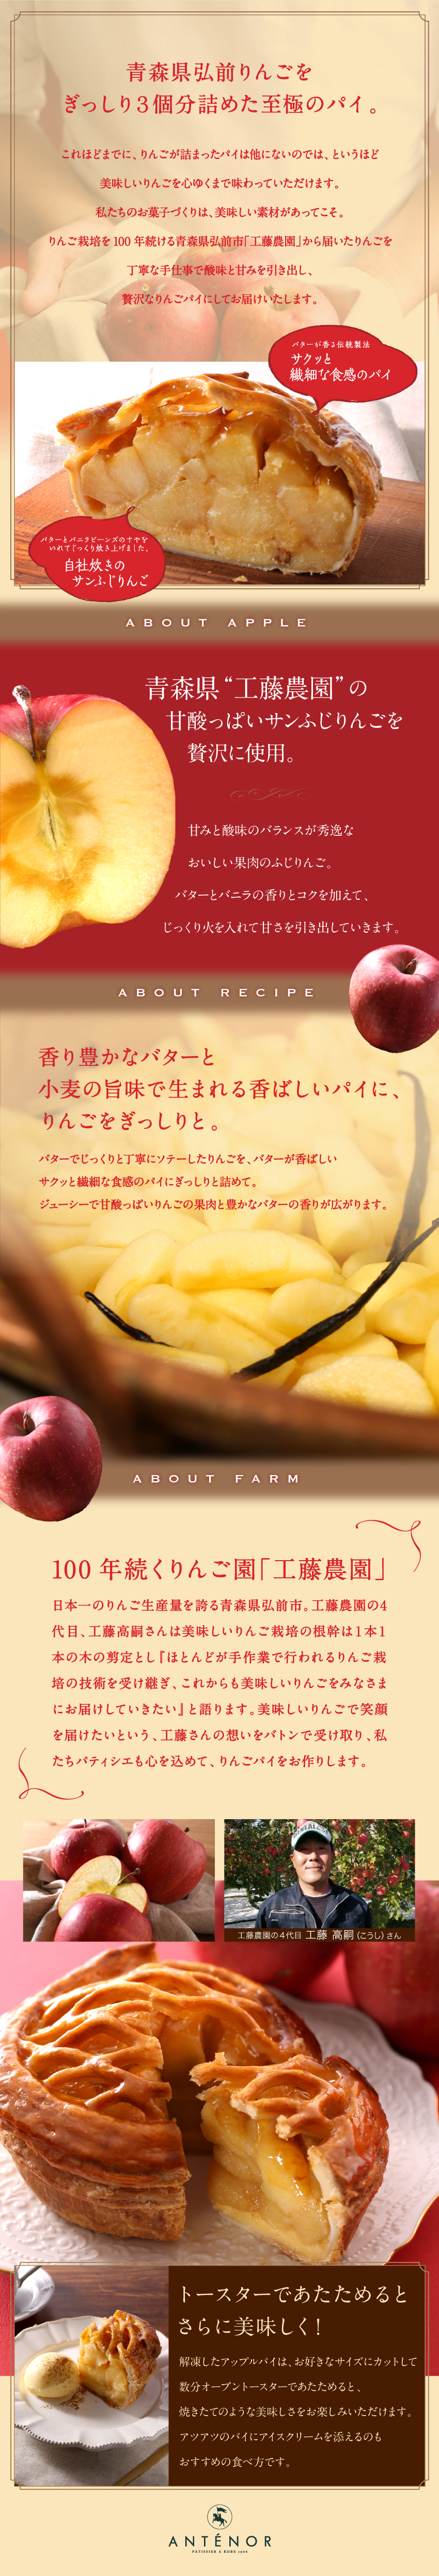 青森県弘前りんごをぎっしり3個分詰めた至極のパイ。「工藤農園」から届いたりんごを丁寧な手作業で酸味と甘みを引き出し、贅沢なりんごパイにしてお届けいたします。